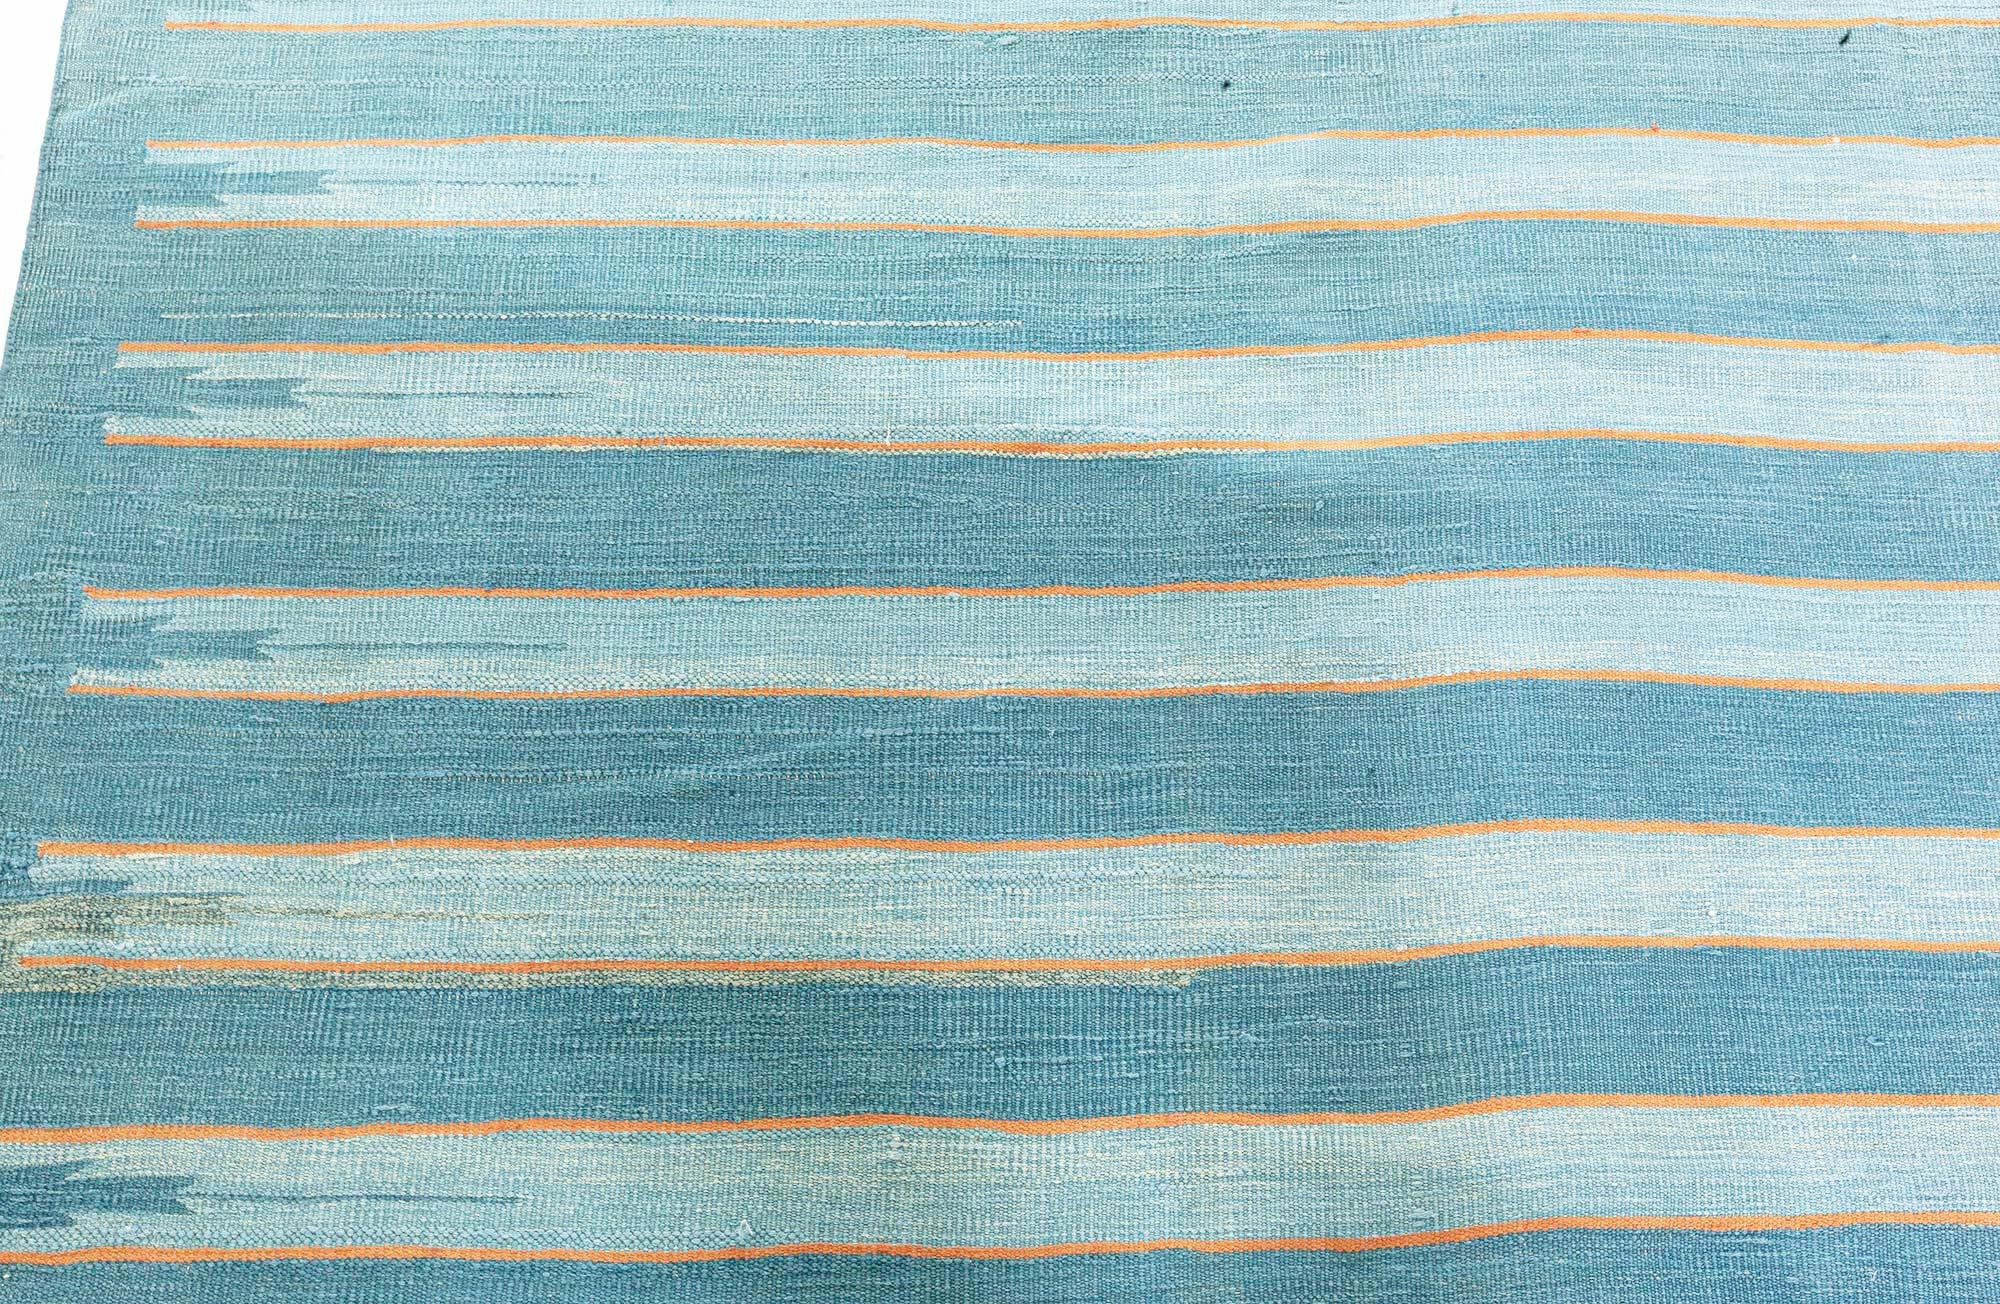 Vintage Indian Dhurrie Gestreifter Blauer Teppich
Größe: 14'1